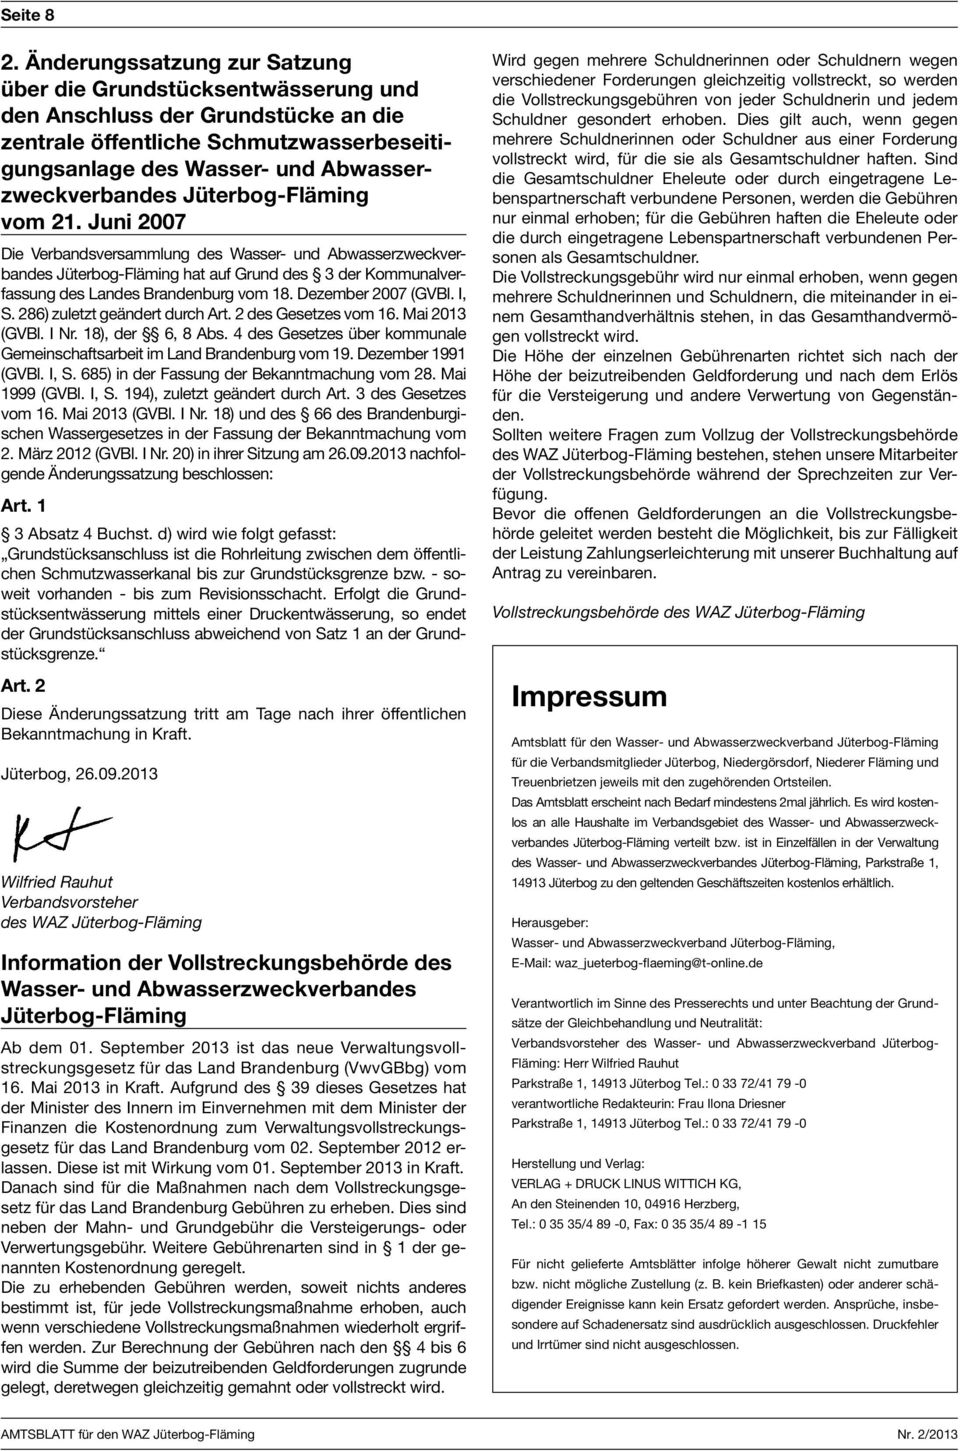 21. Juni 2007 hat auf Grund des 3 der Kommunalverfassung des Landes Brandenburg vom 18. Dezember 2007 (GVBl. I, S. 286) zuletzt geändert durch Art. 2 des Gesetzes vom 16. Mai 2013 (GVBl. I Nr.